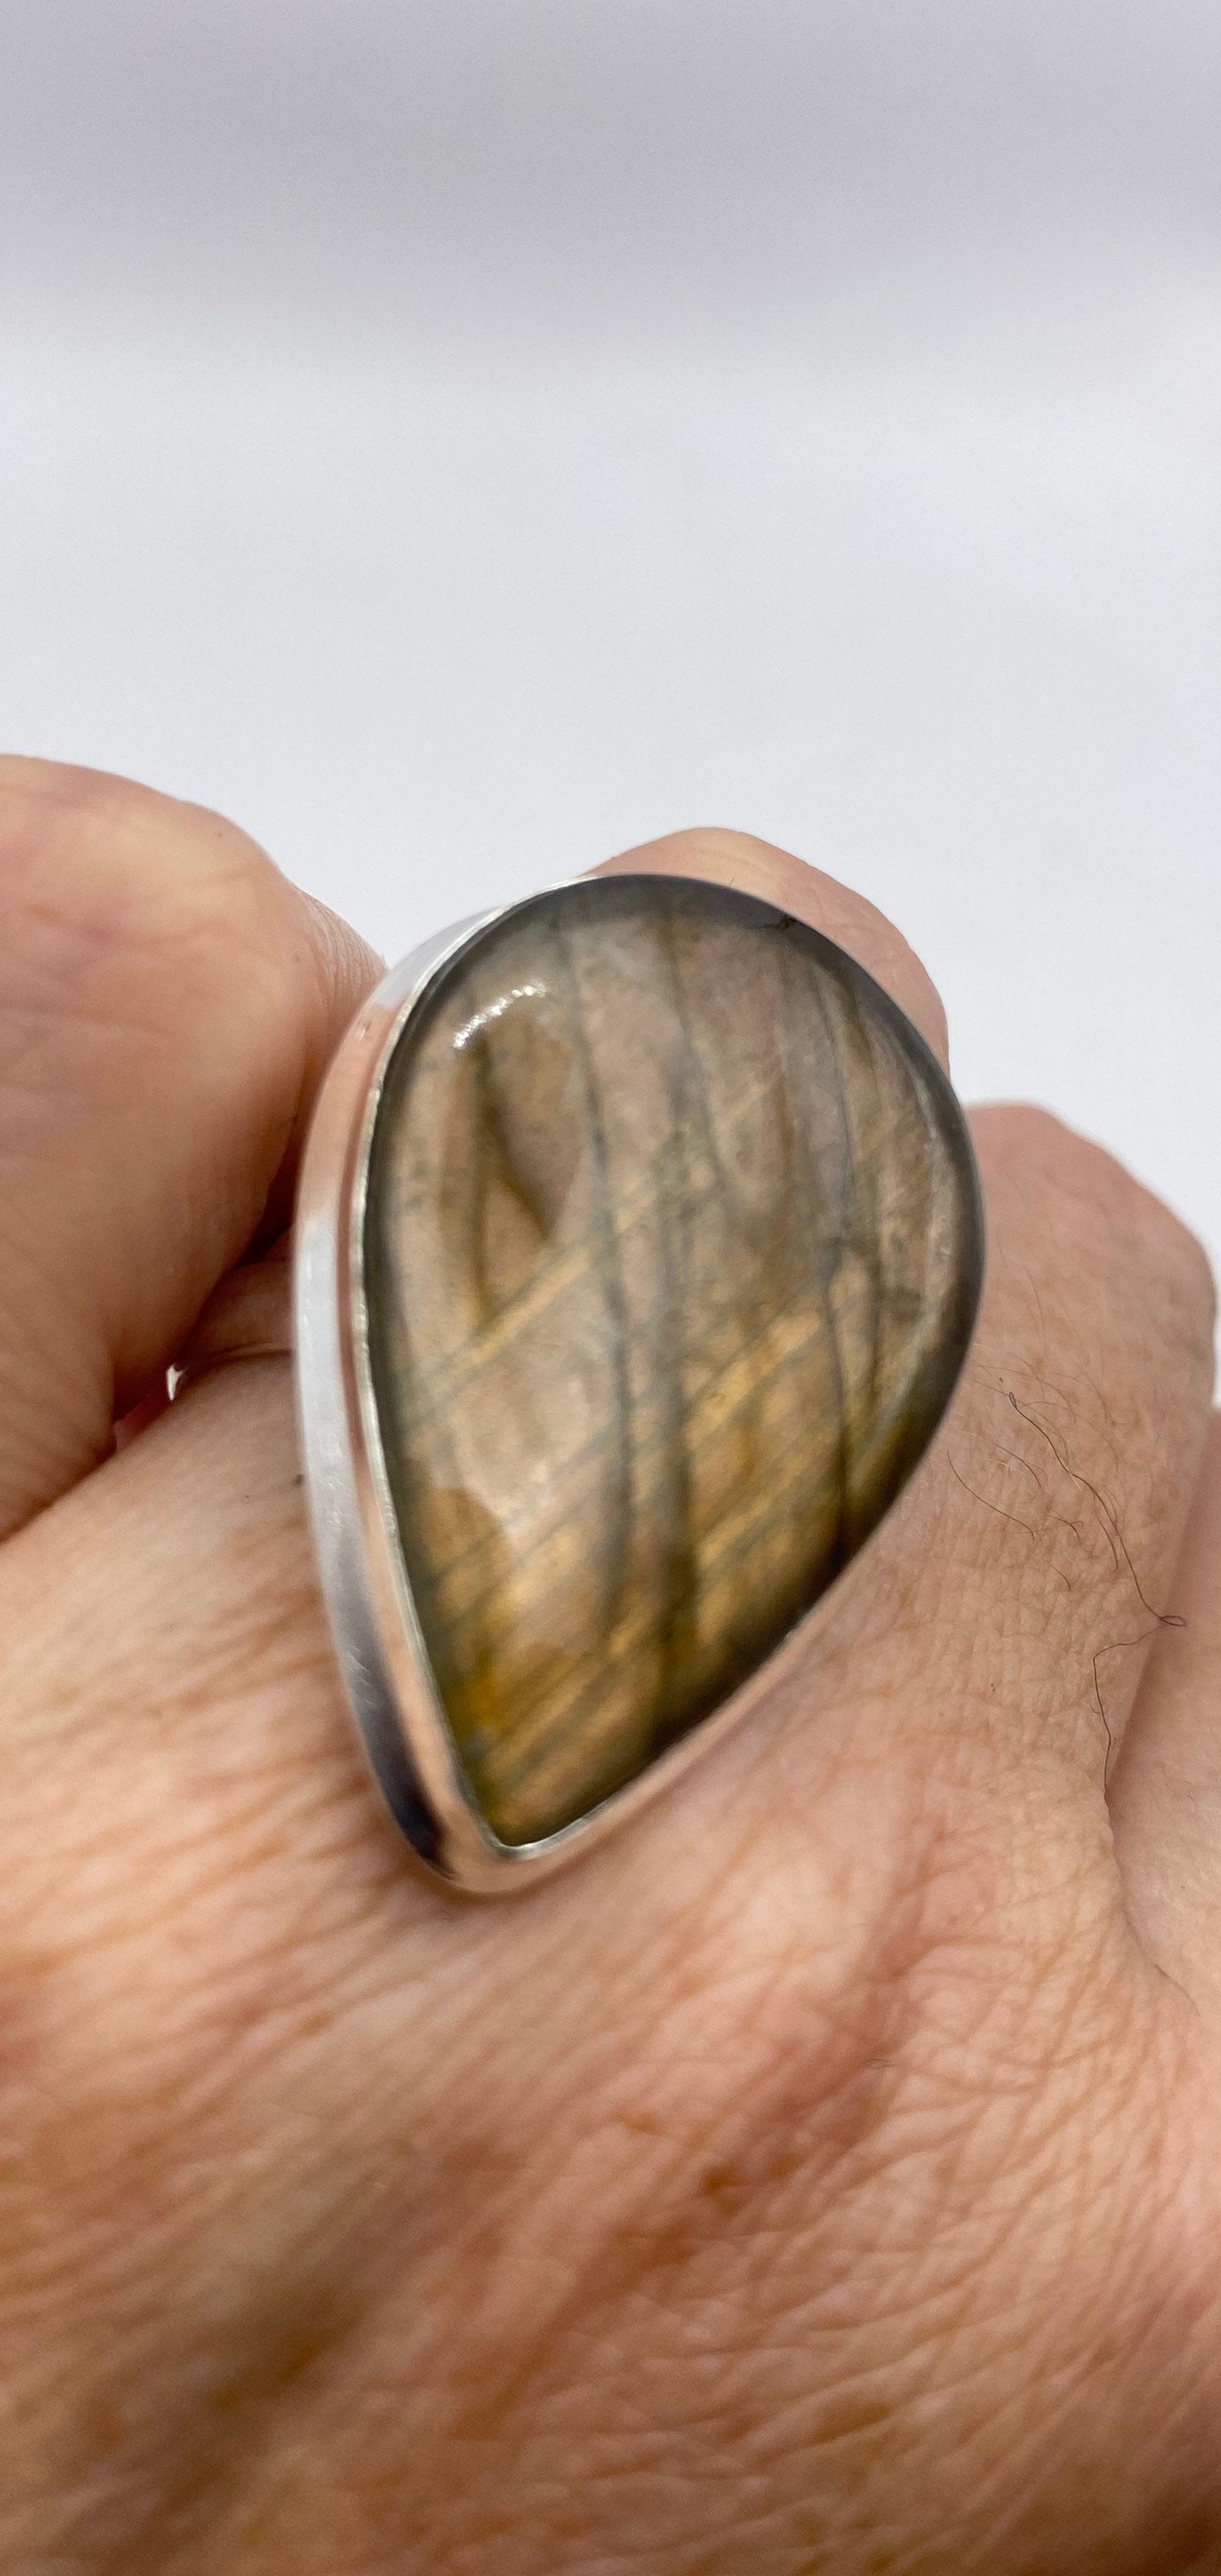 Vintage Large Bronze Green Labradorite Stone Silver Ring